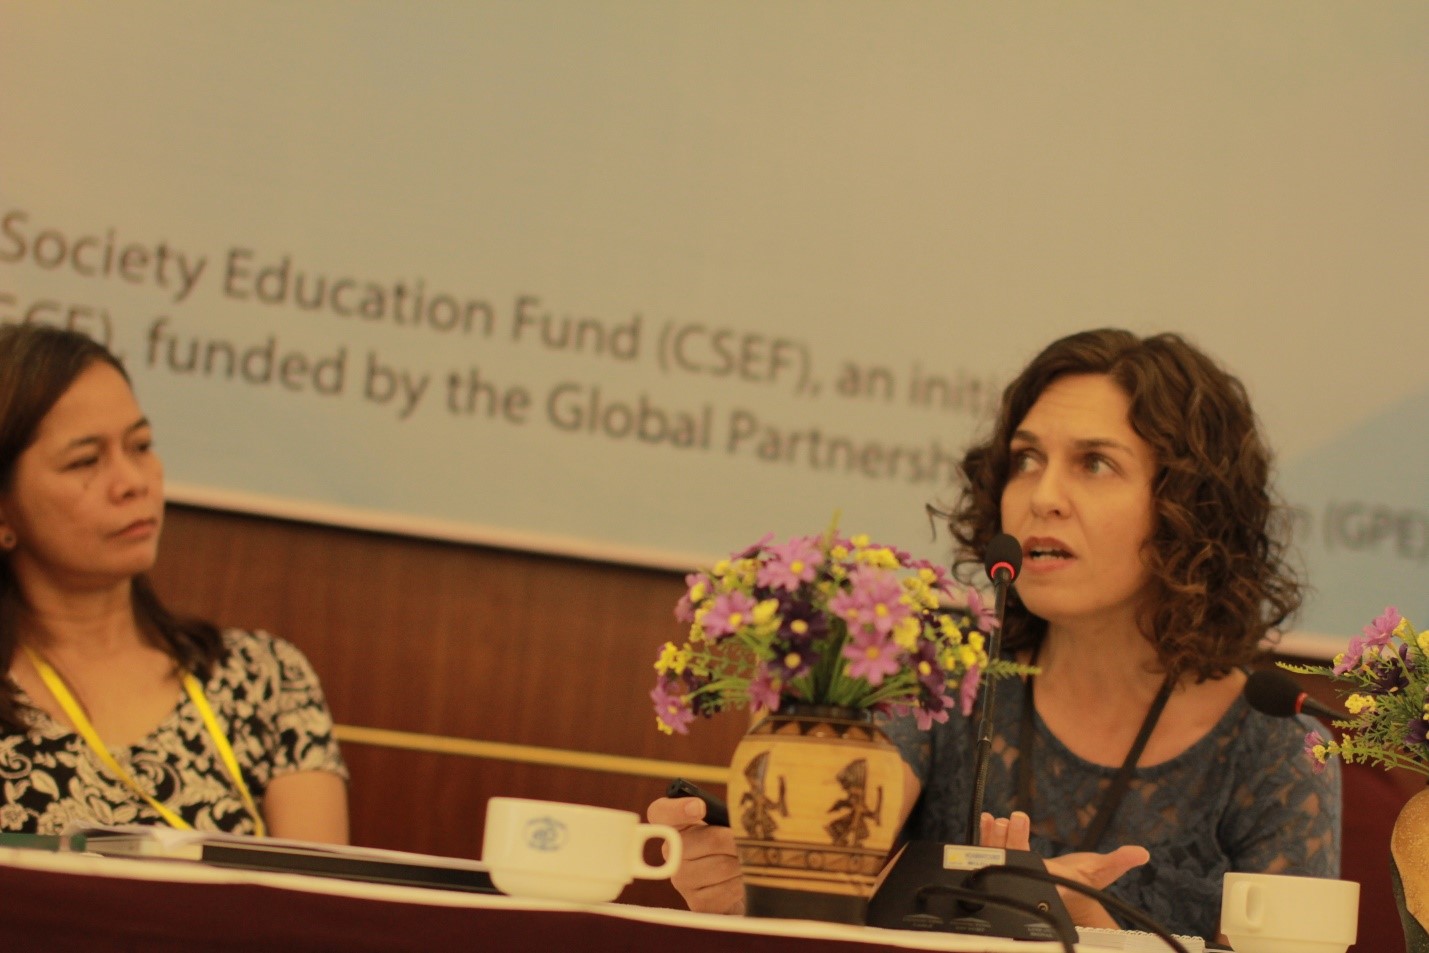 Tư nhân hóa giáo dục đang là xu thế chủ đạo trong giáo dục tại các quốc gia Châu Mỹ La Tinh – bà Laura Giannechini (điều phối dực án CSEF vùng Mỹ La Tinh) nhận định